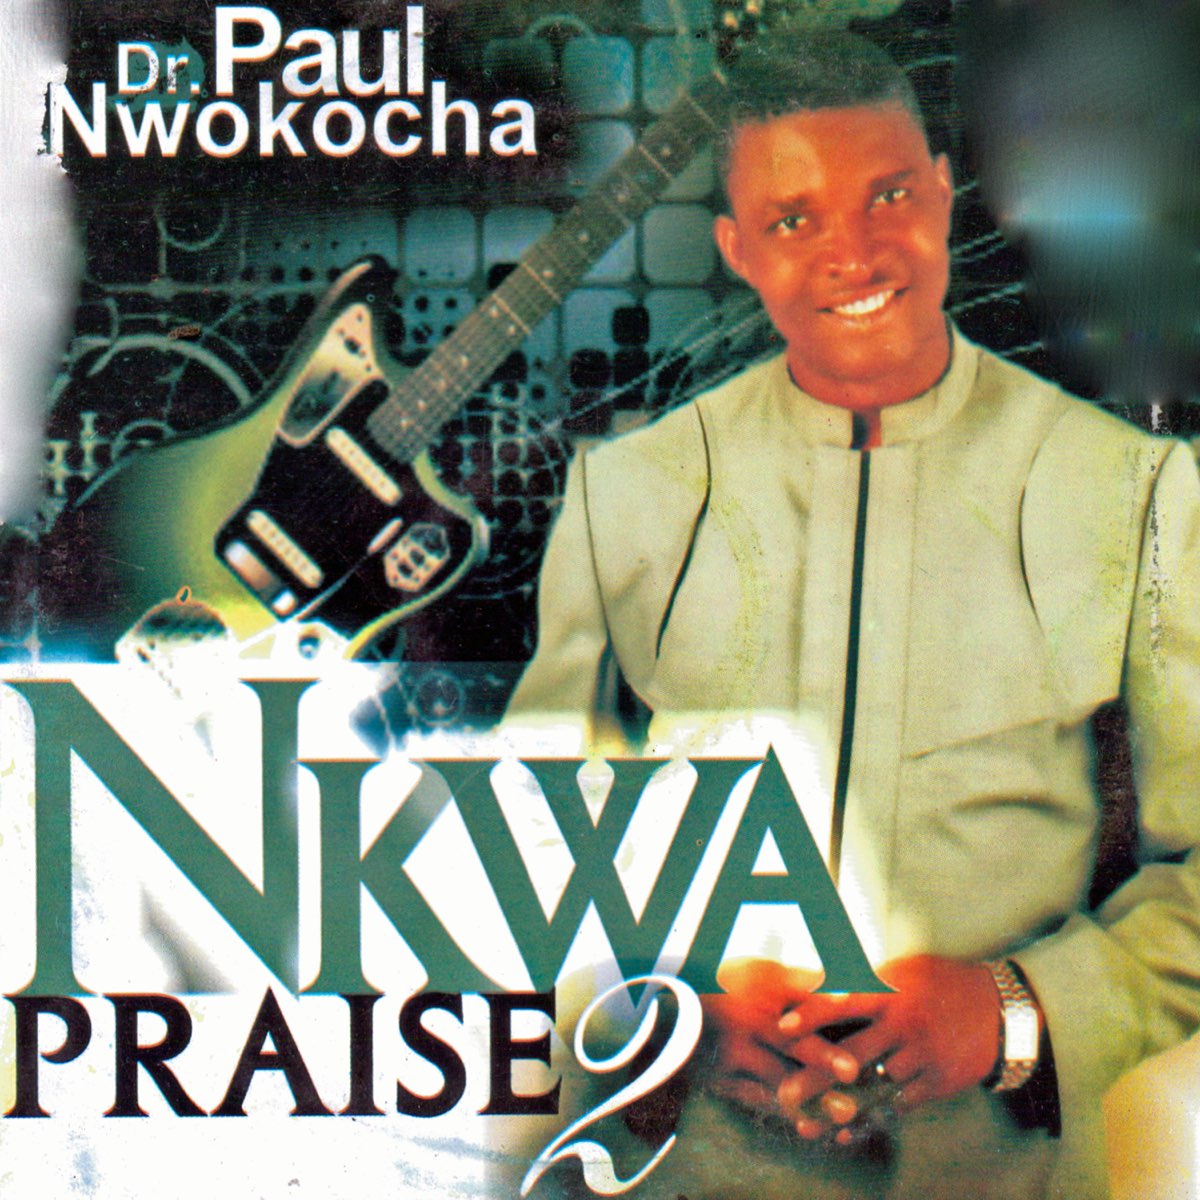 Paul Nwokocha - Nkwa Praise 2 (Track 2)